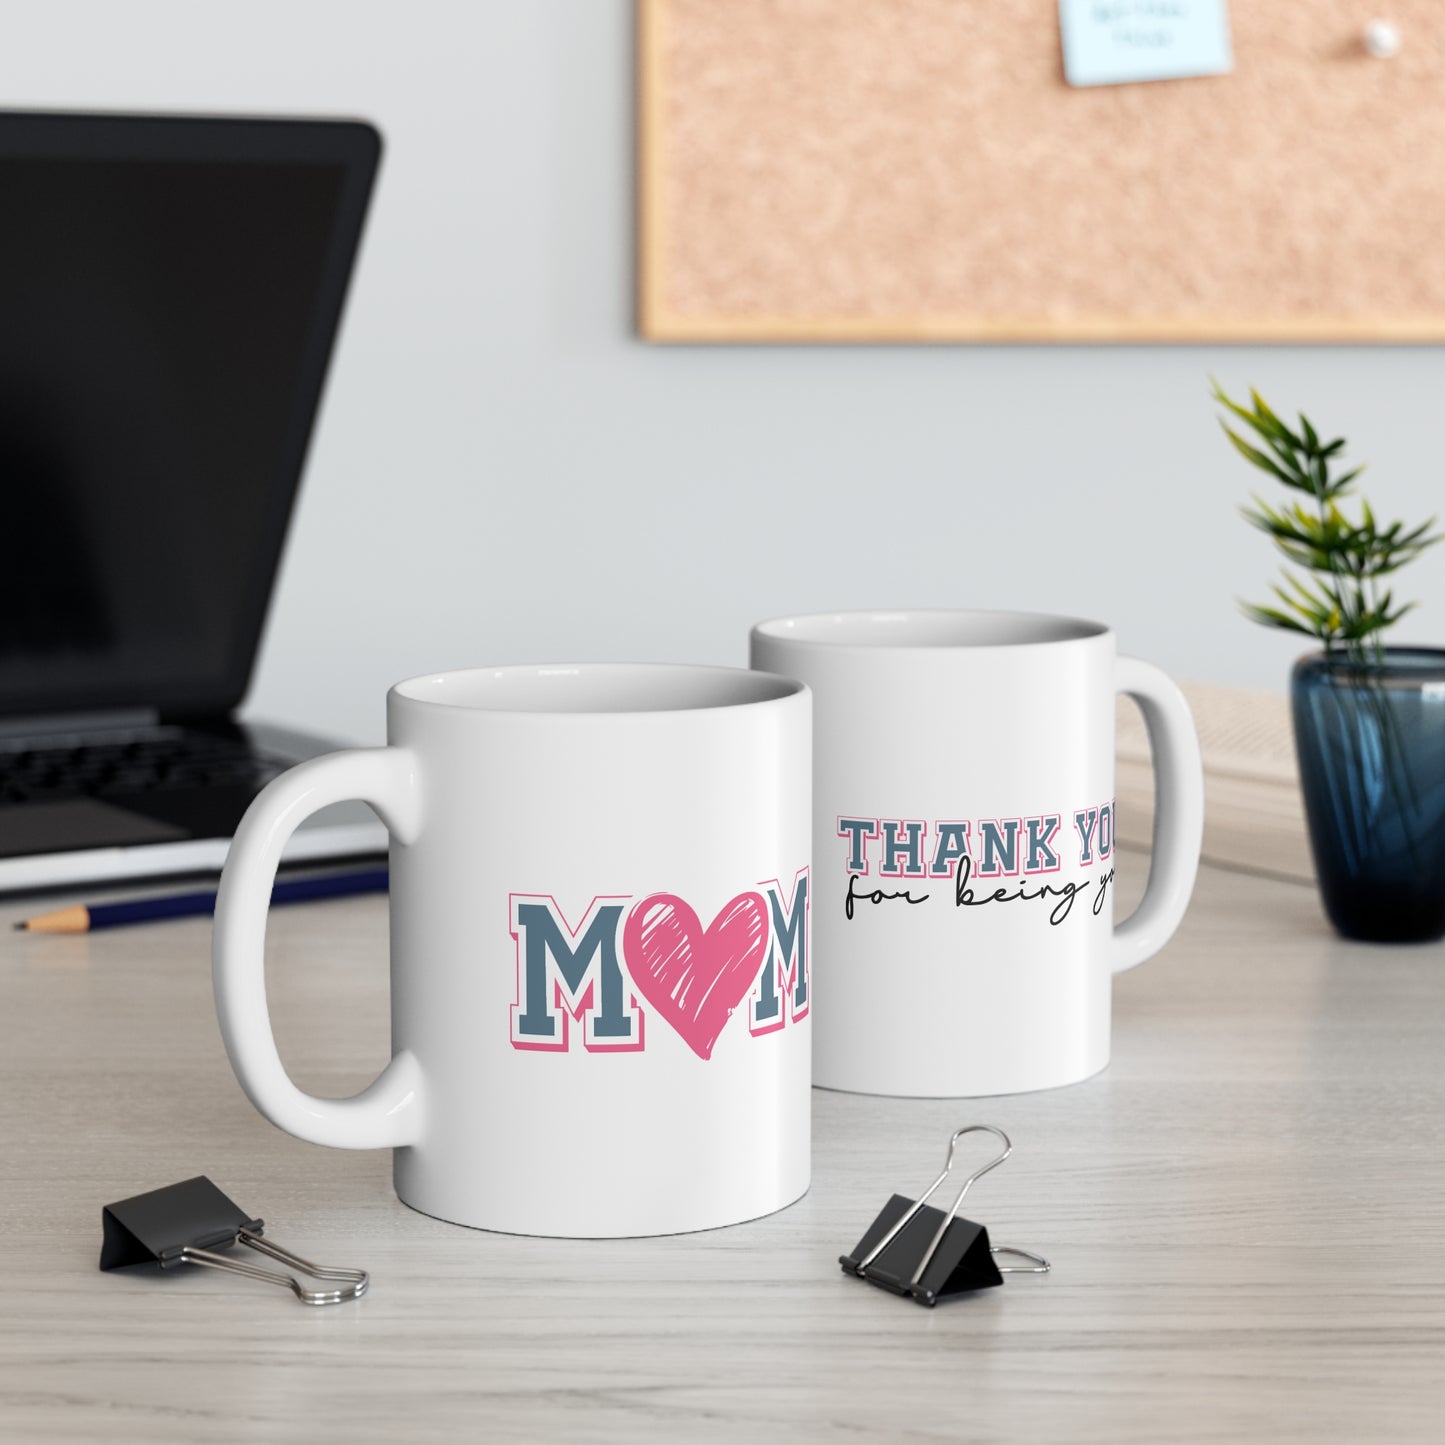 Mom Mug, Mother's Day Mug, Mothers Day Mug, White with and Pink Heart Mug, Pink Heart "Mom" Mug, Gift